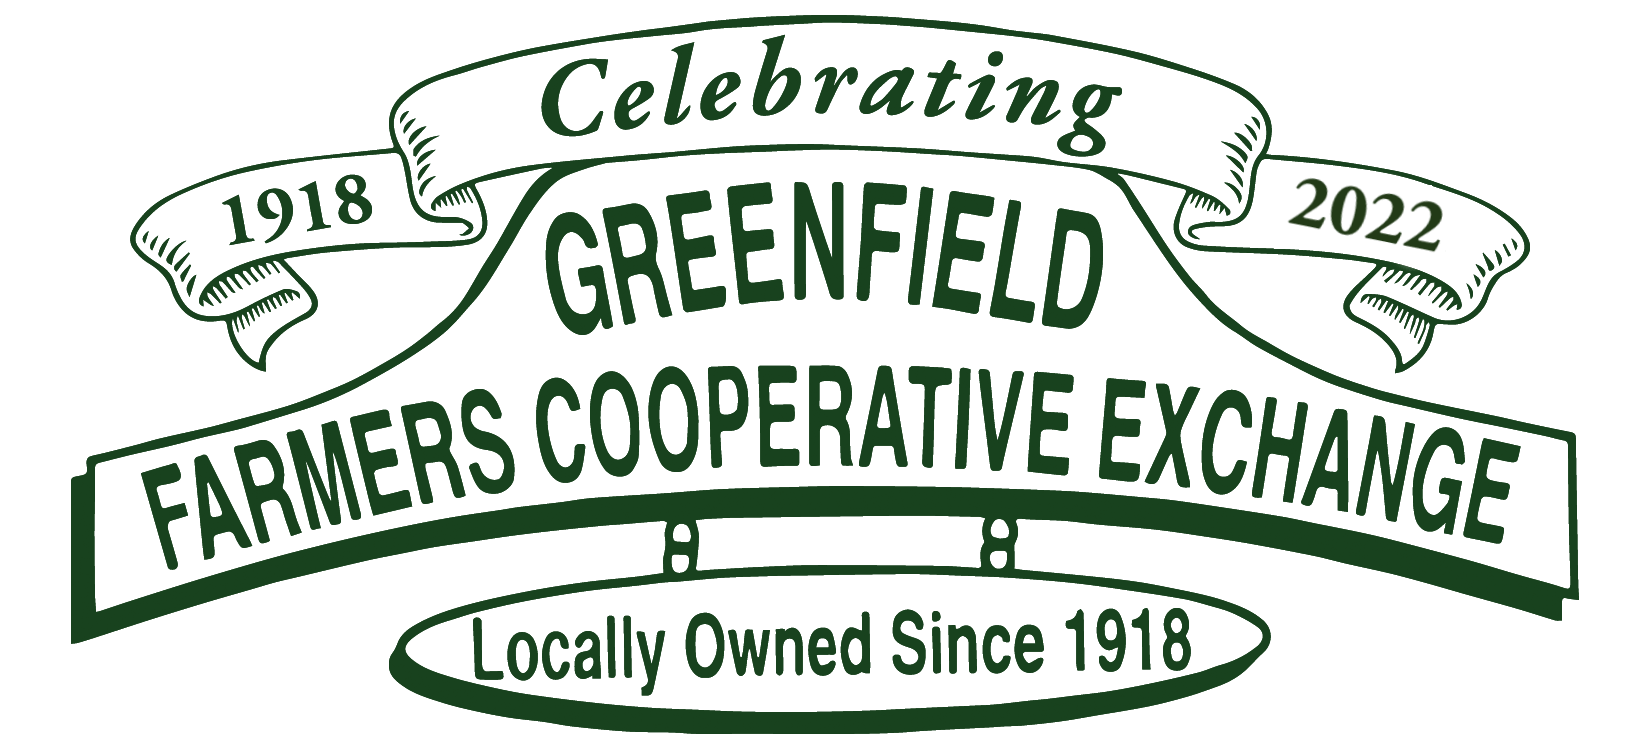 Greenfield Farmers Coop